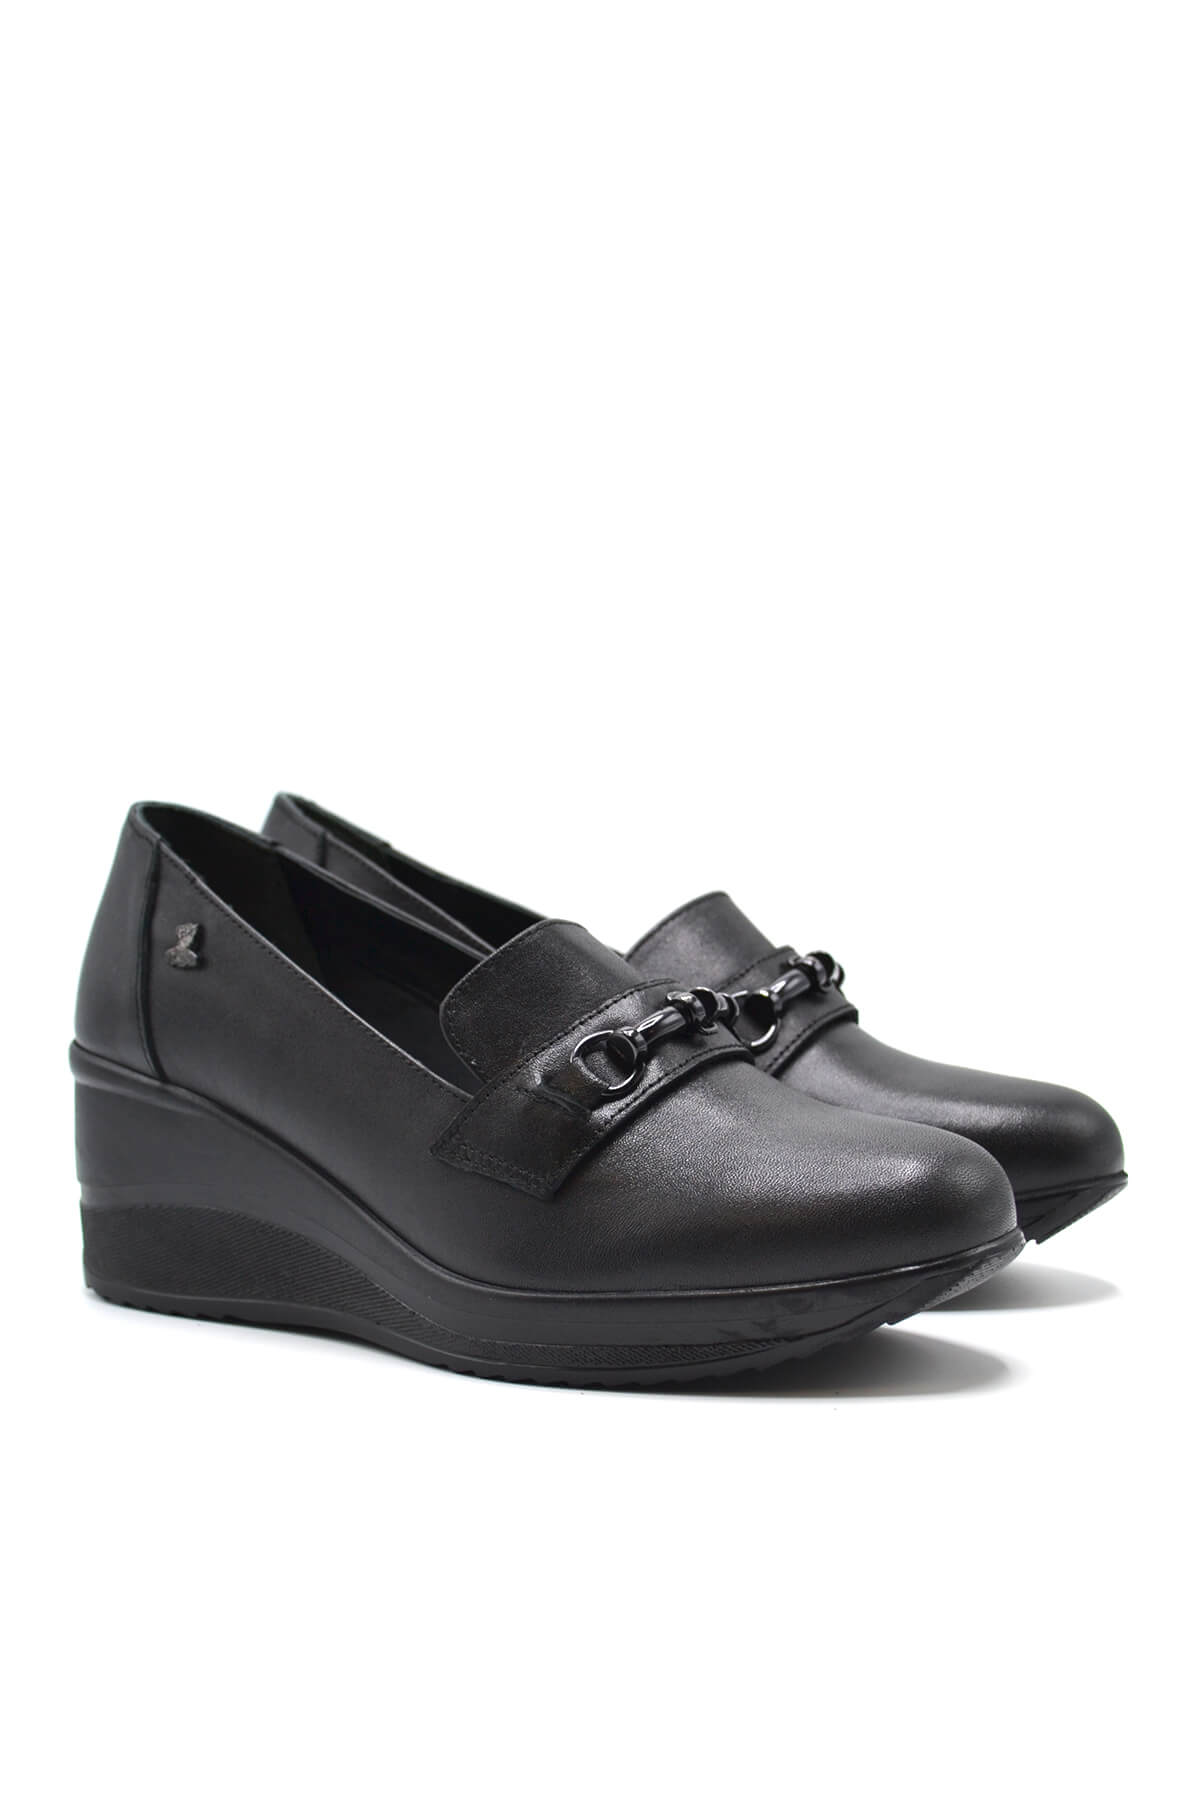 Kadın Dolgu Topuk Deri Ayakkabı Siyah 2111514K